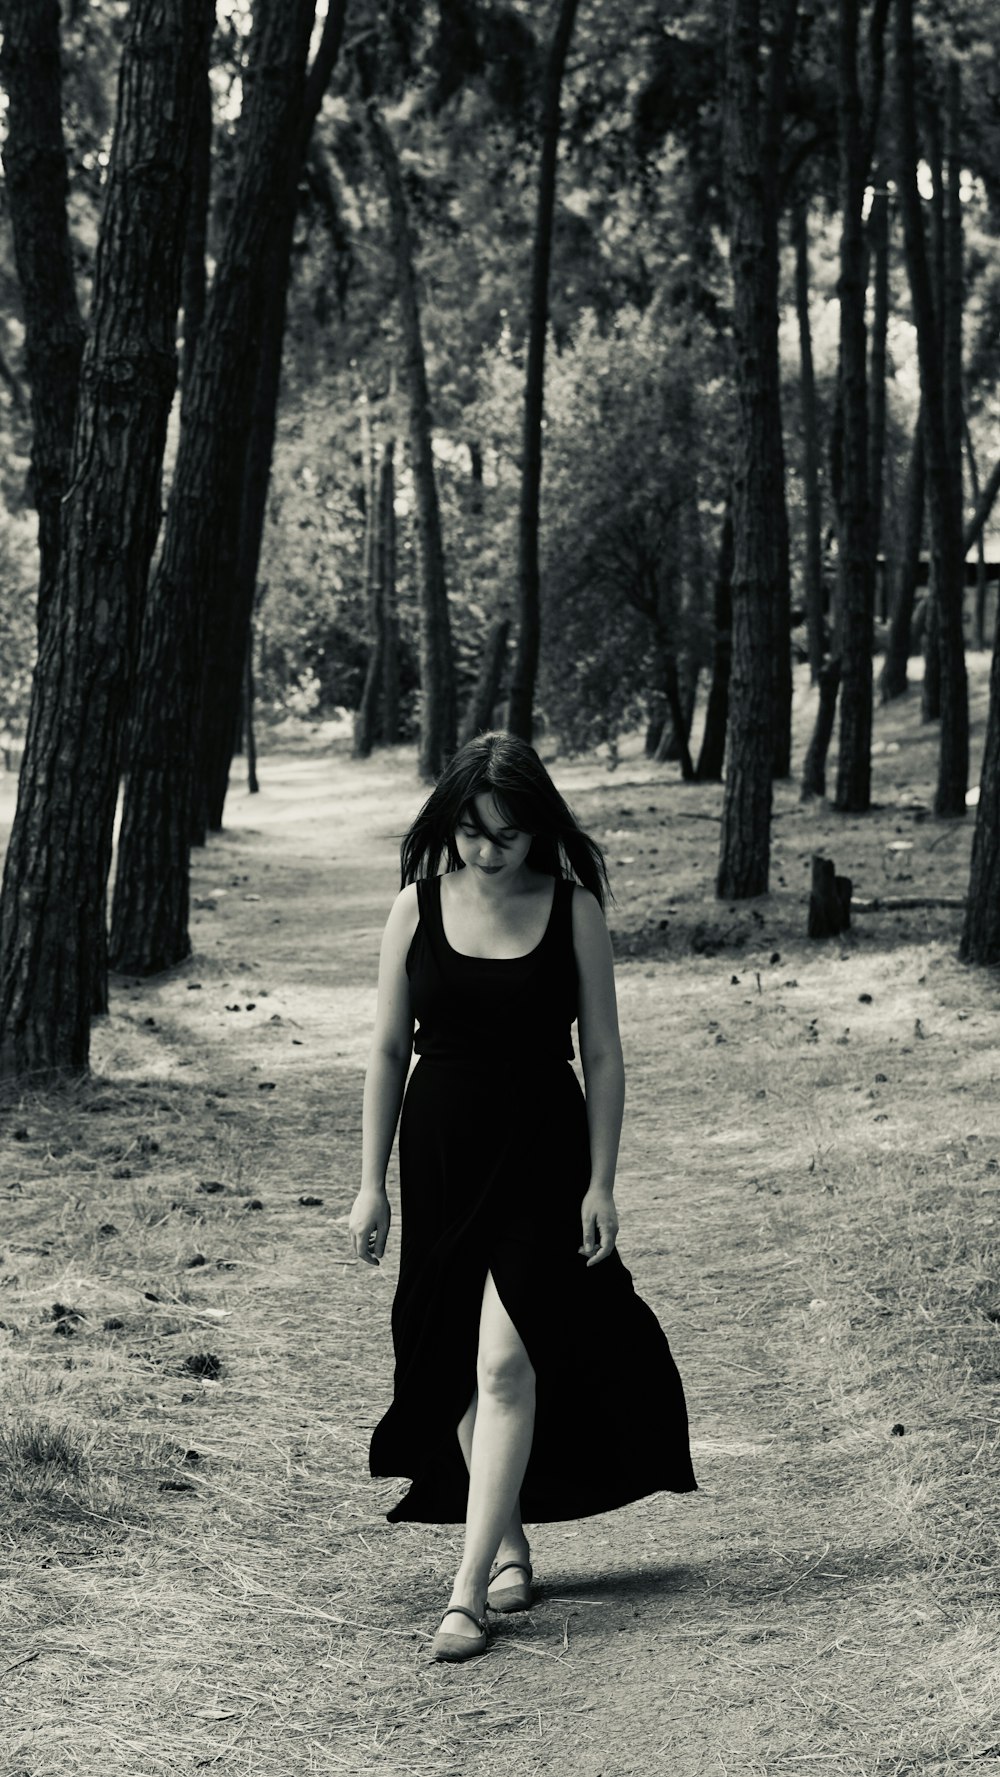 검은 드레스를 입은 여자가 숲 속을 걷고 있다